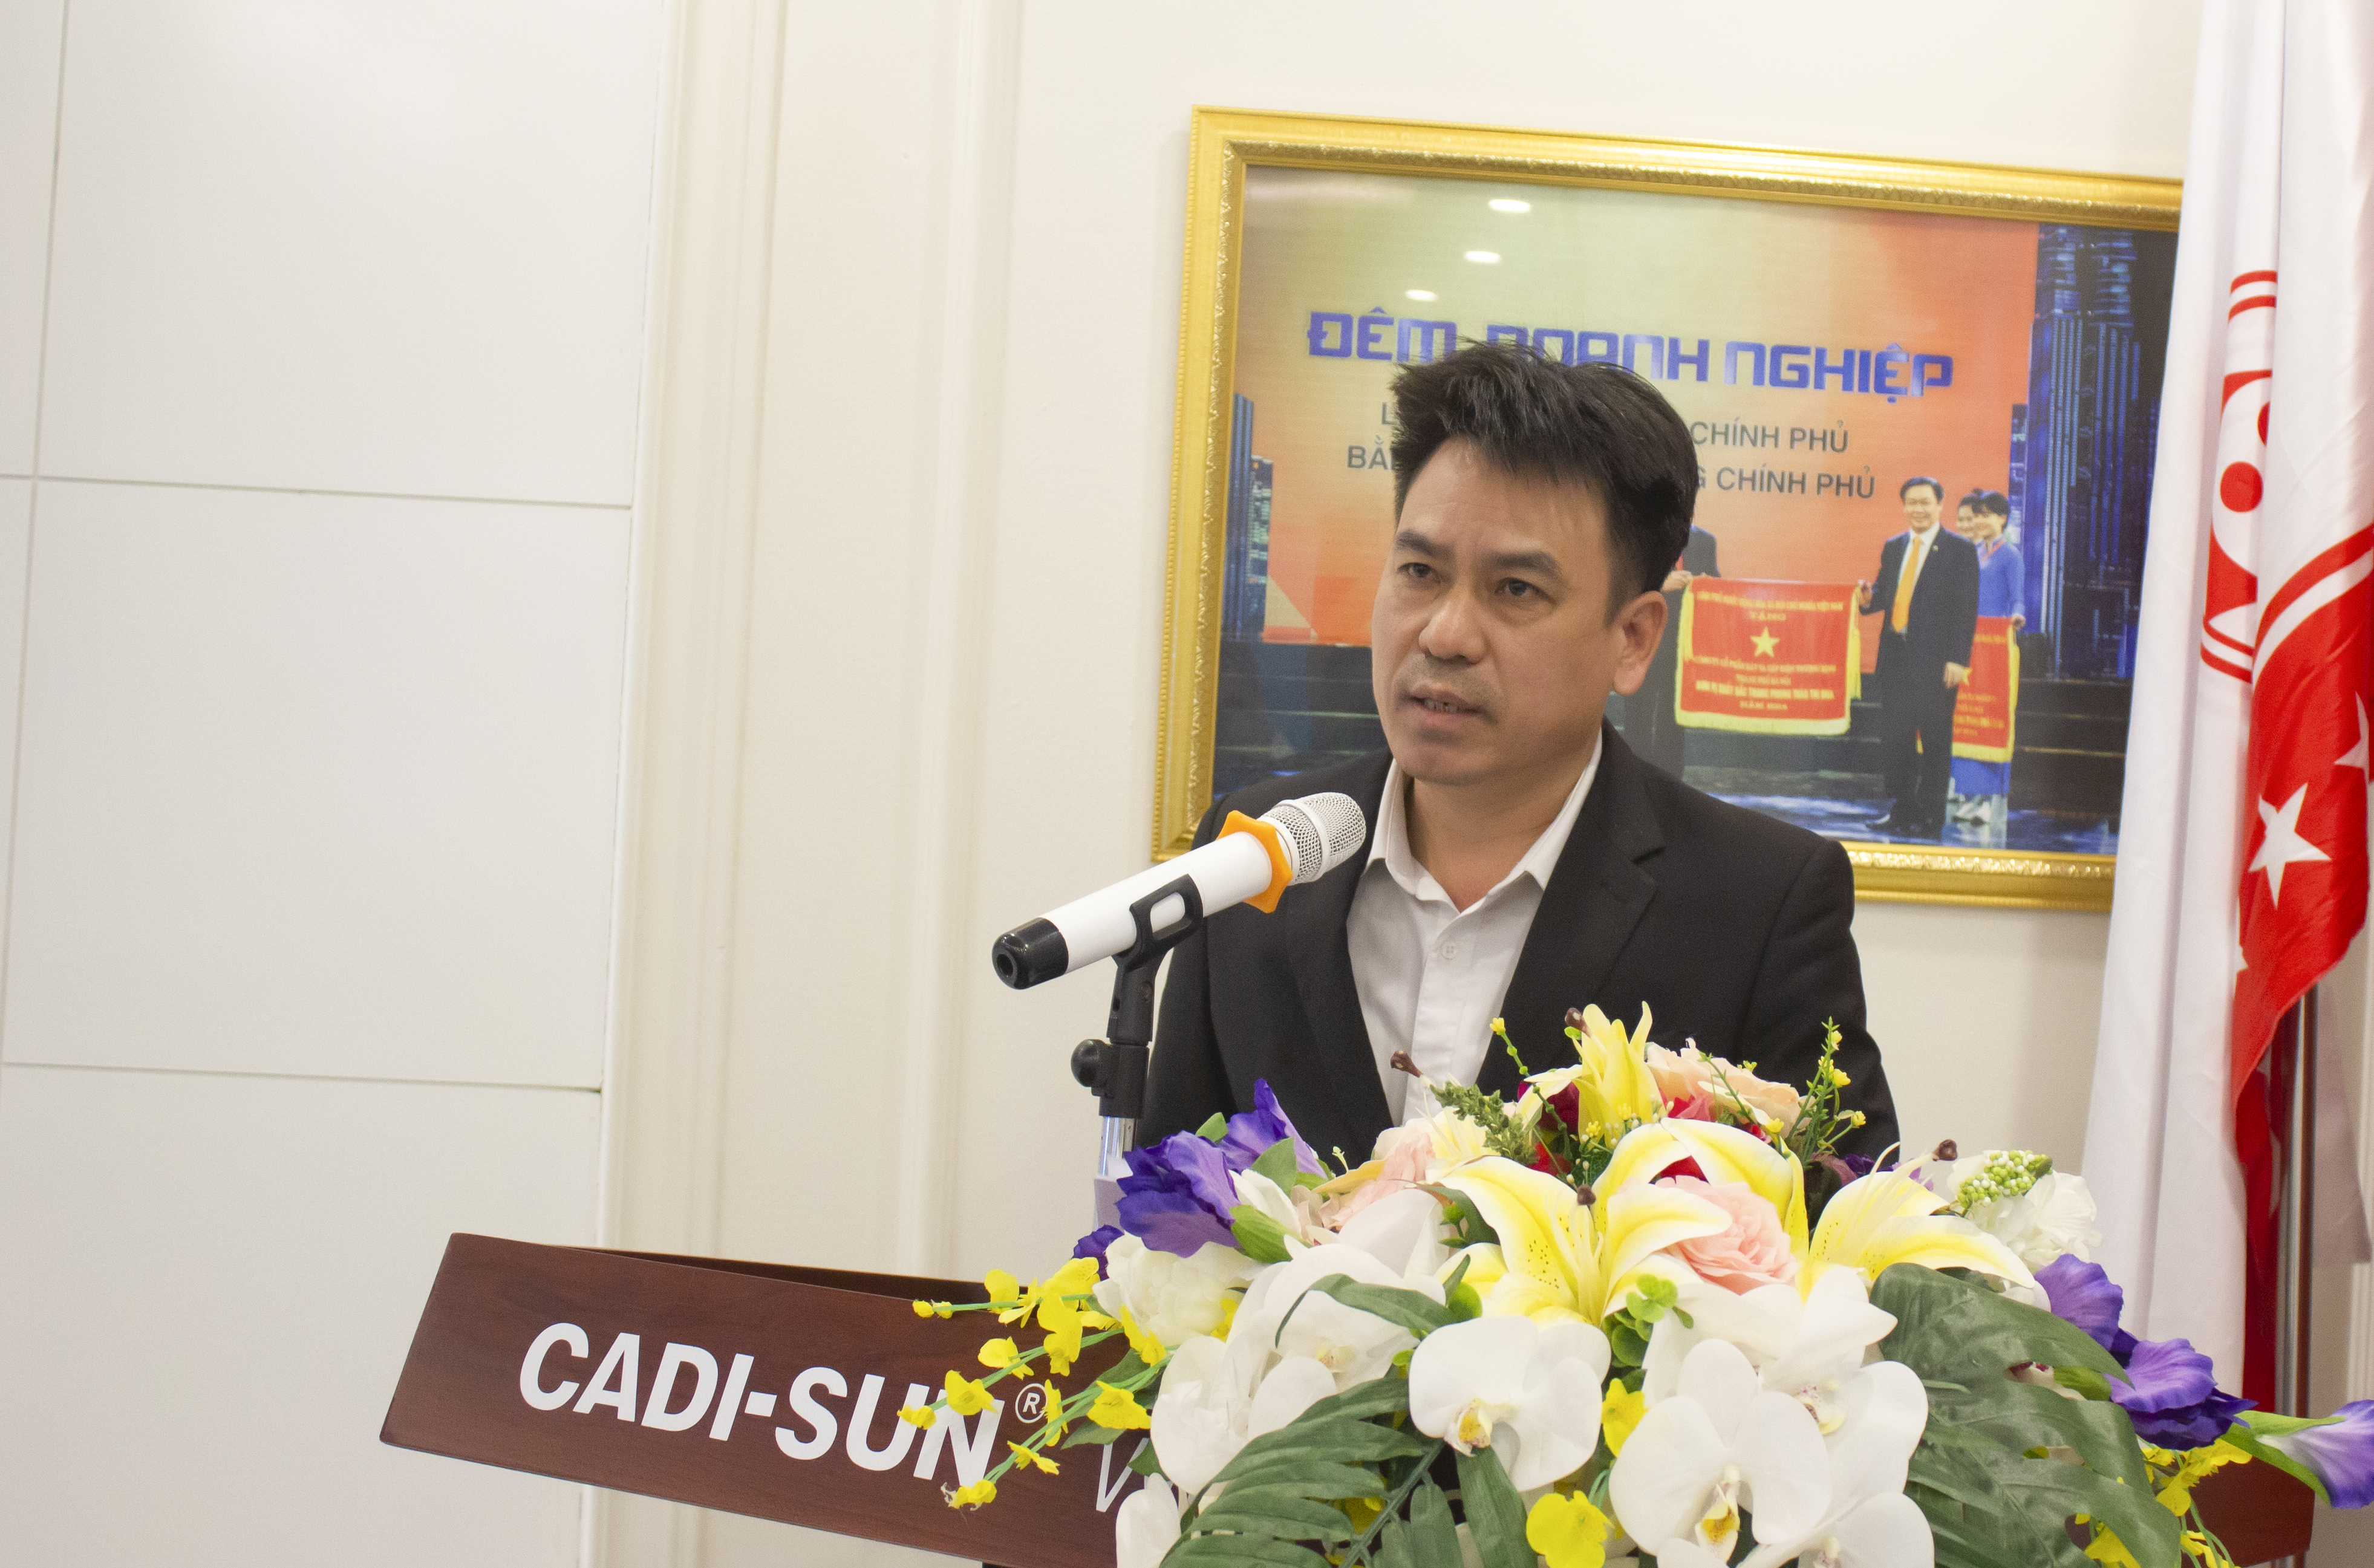 Năm 2021, sản xuất – kinh doanh của CADI-SUN tiếp đà tăng trưởng